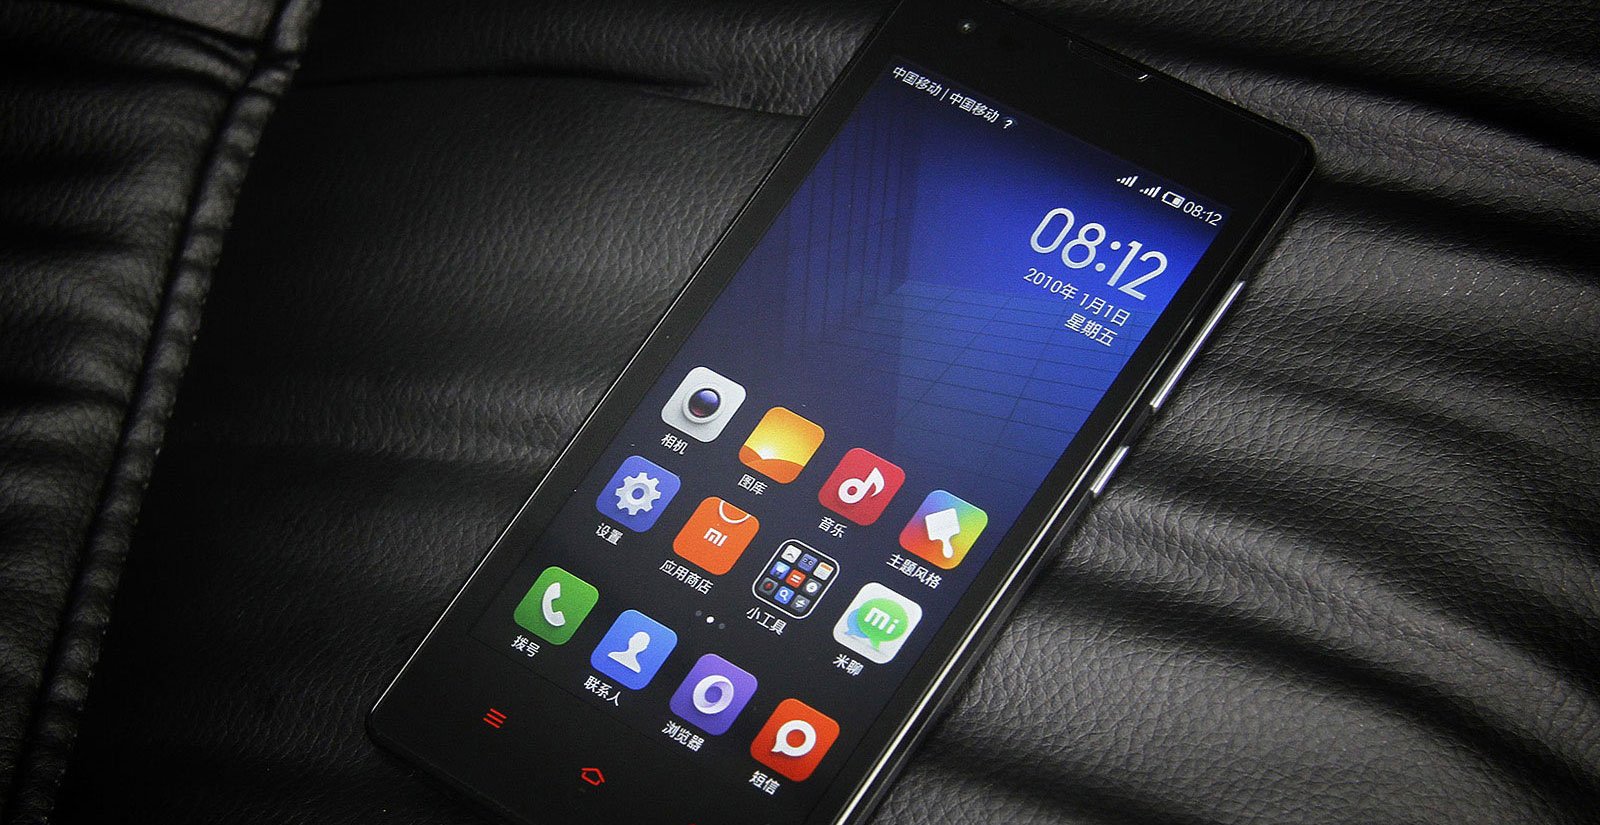 红米手机 3 发布，售价 699 元 - 雷科技